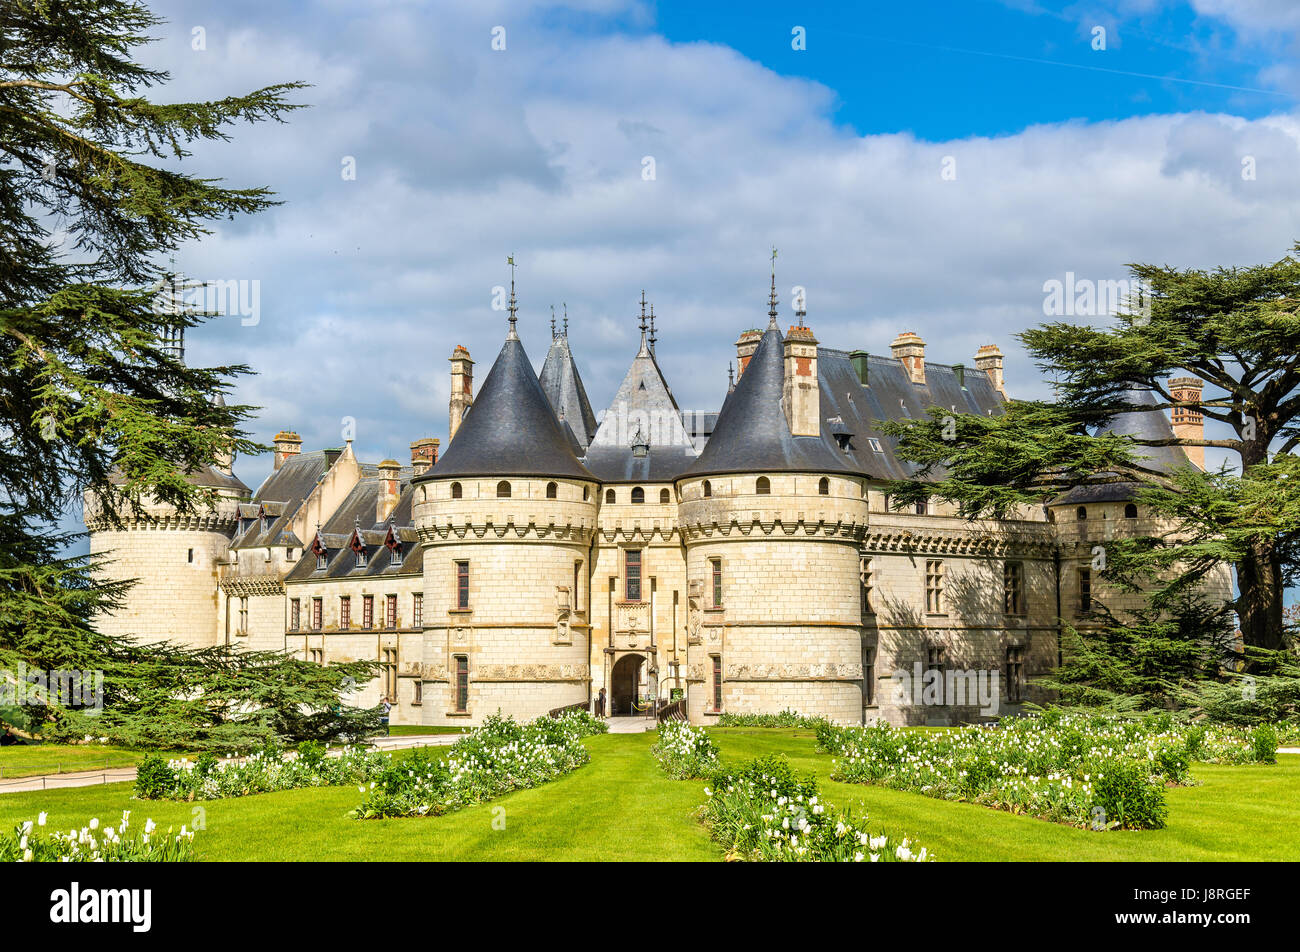 Chateau de Chaumont-sur-Loire, a castle in the Loire Valley of France Stock Photo